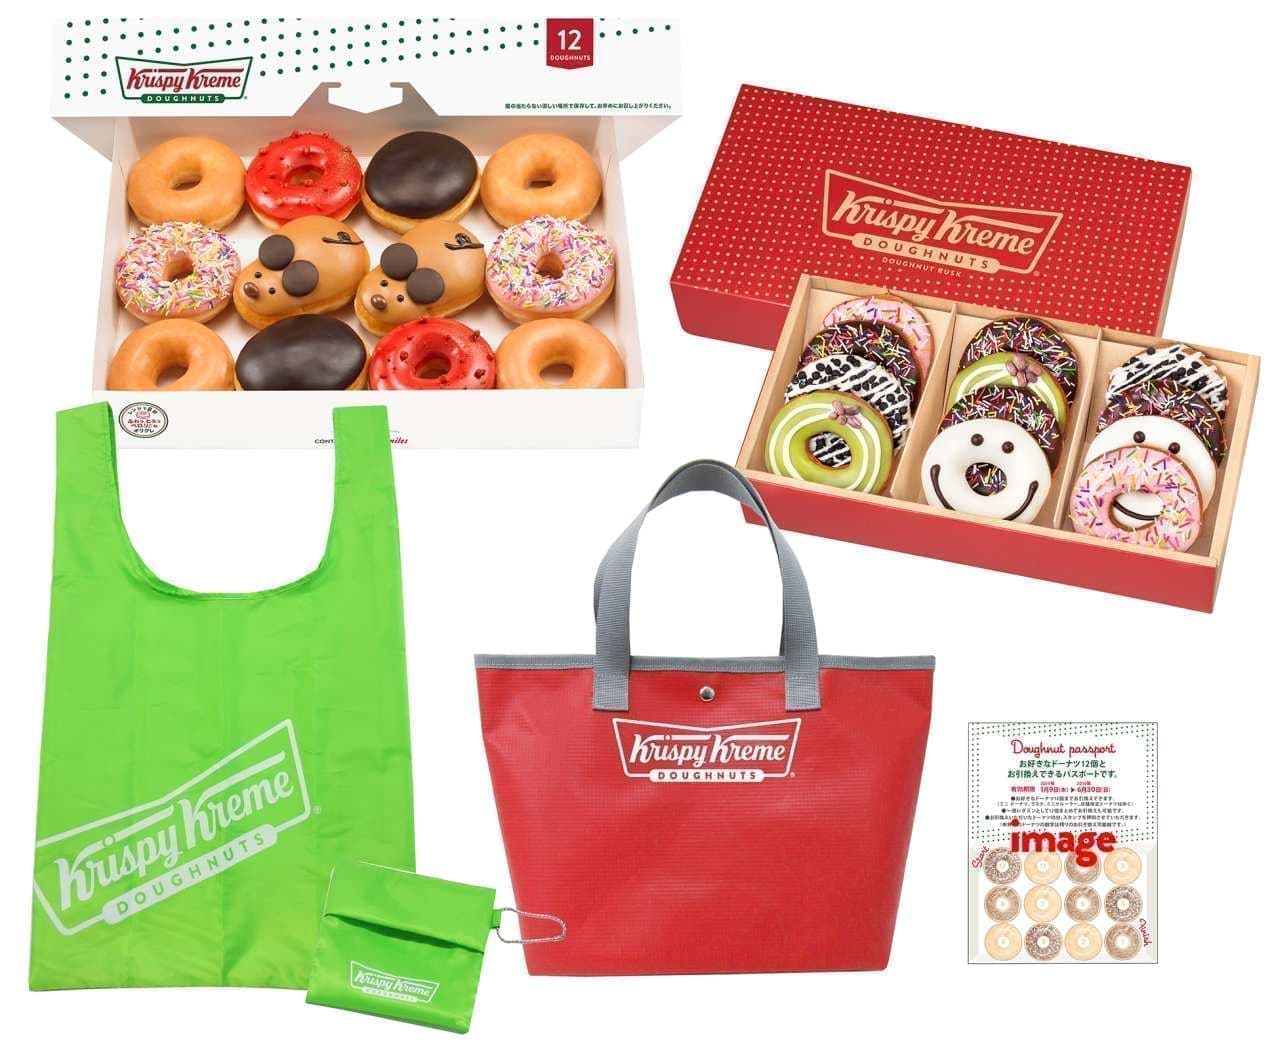 "Crispy cream donut lucky bag 2020" 3 days, limited quantity